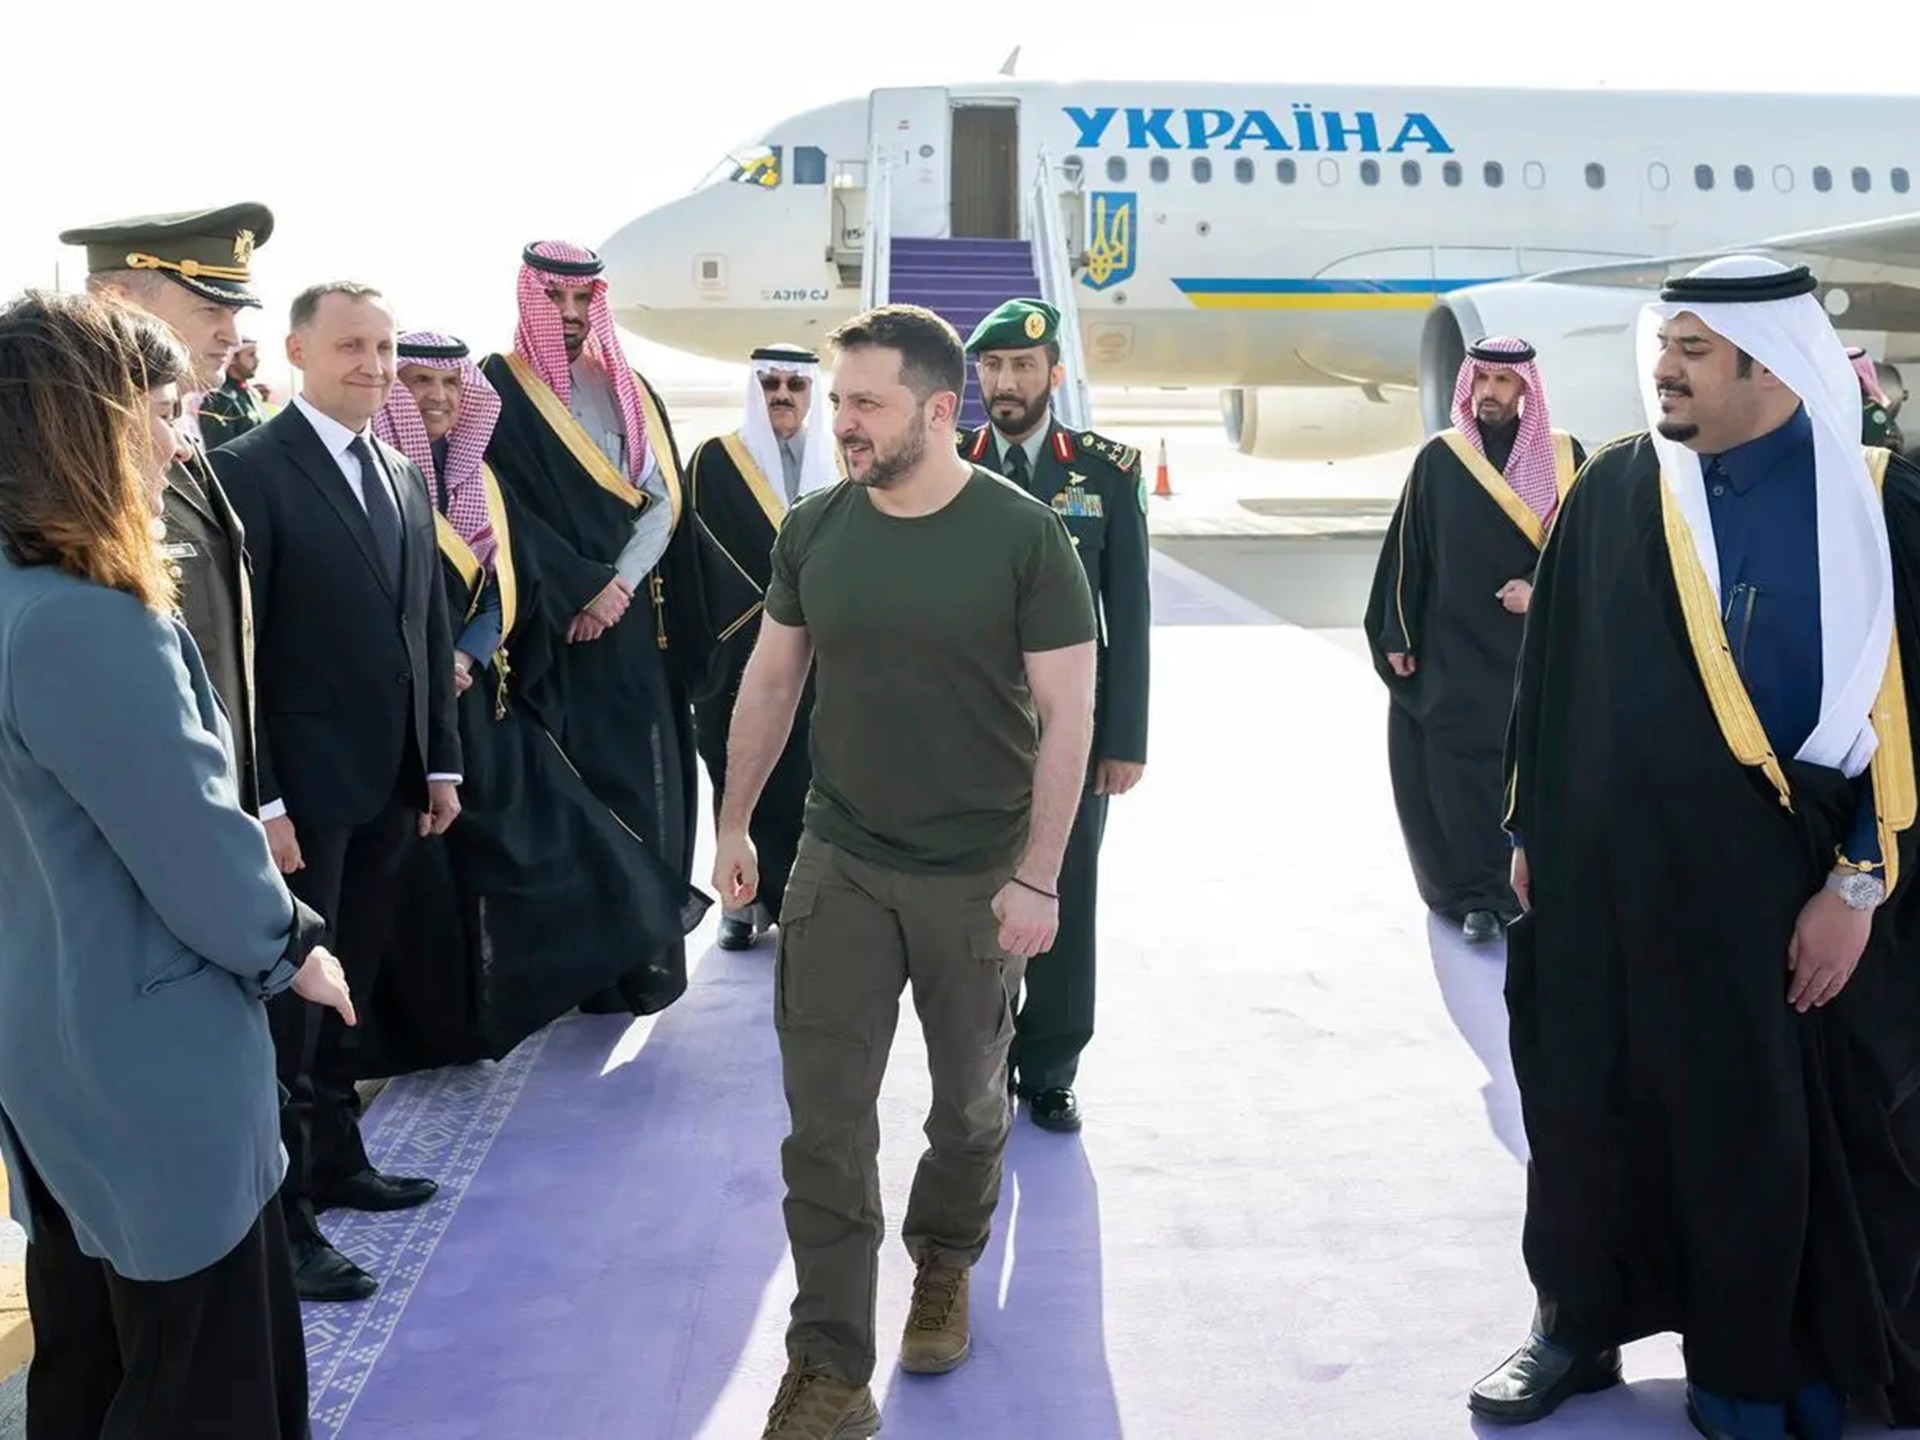 زيلينسكي في السعودية للدفع من أجل السلام، واتفاق أسرى الحرب مع روسيا  أخبار الحرب بين روسيا وأوكرانيا